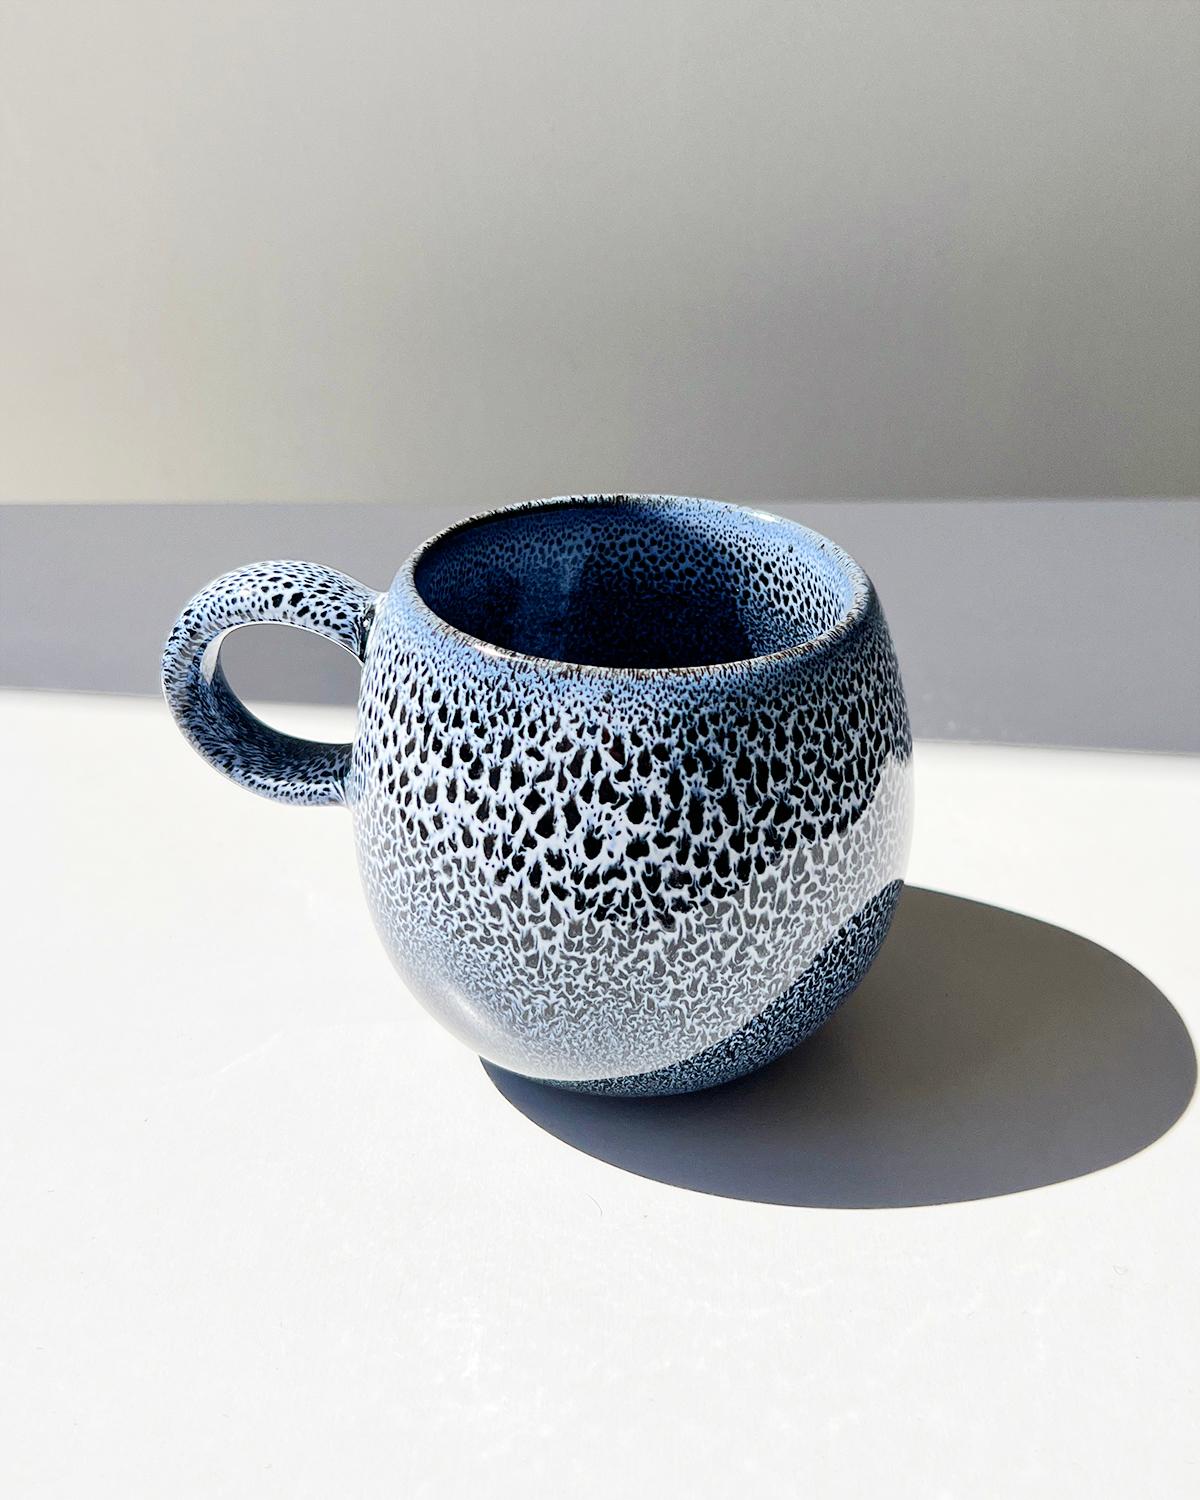 Un ensemble de tasses faites à la main pour votre café. Pour ceux qui souhaitent un ensemble de mugs élégants et discrets, ces magnifiques mugs bleu indigo blancs sont l'objet de décoration parfait à ajouter à votre collection. La surface organique